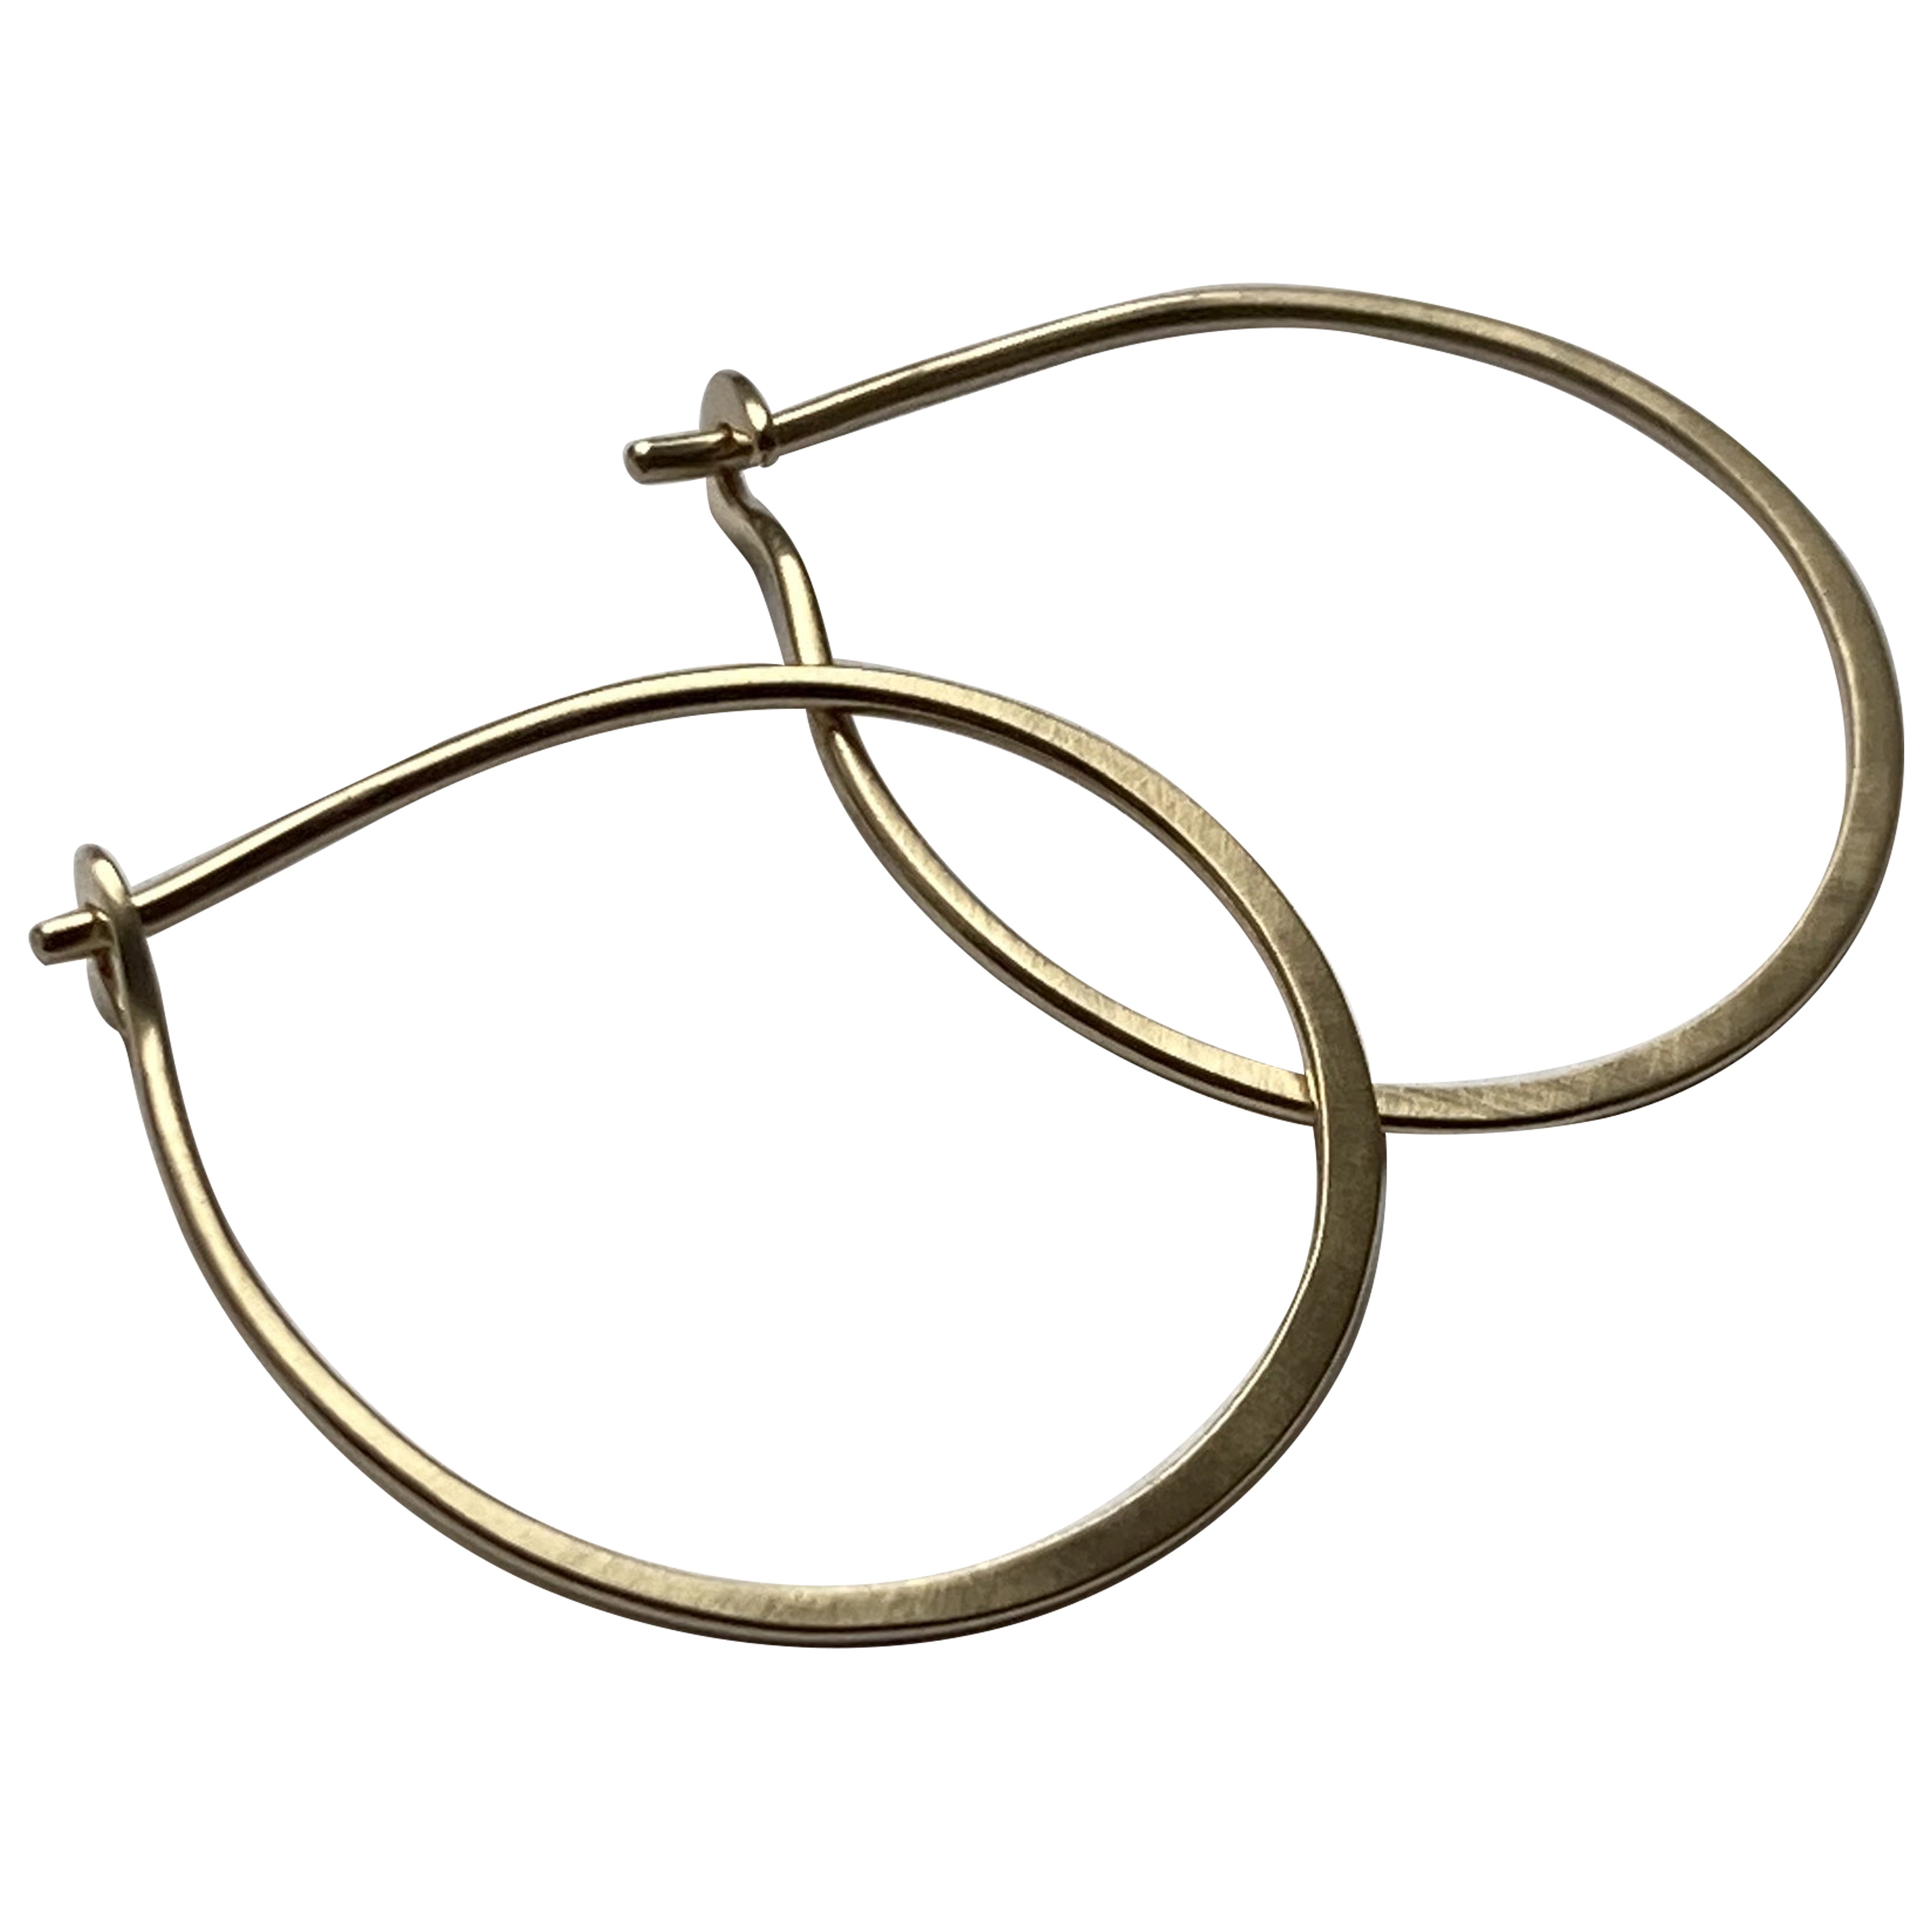 Olive Hoop Earrings in 9ct Gold